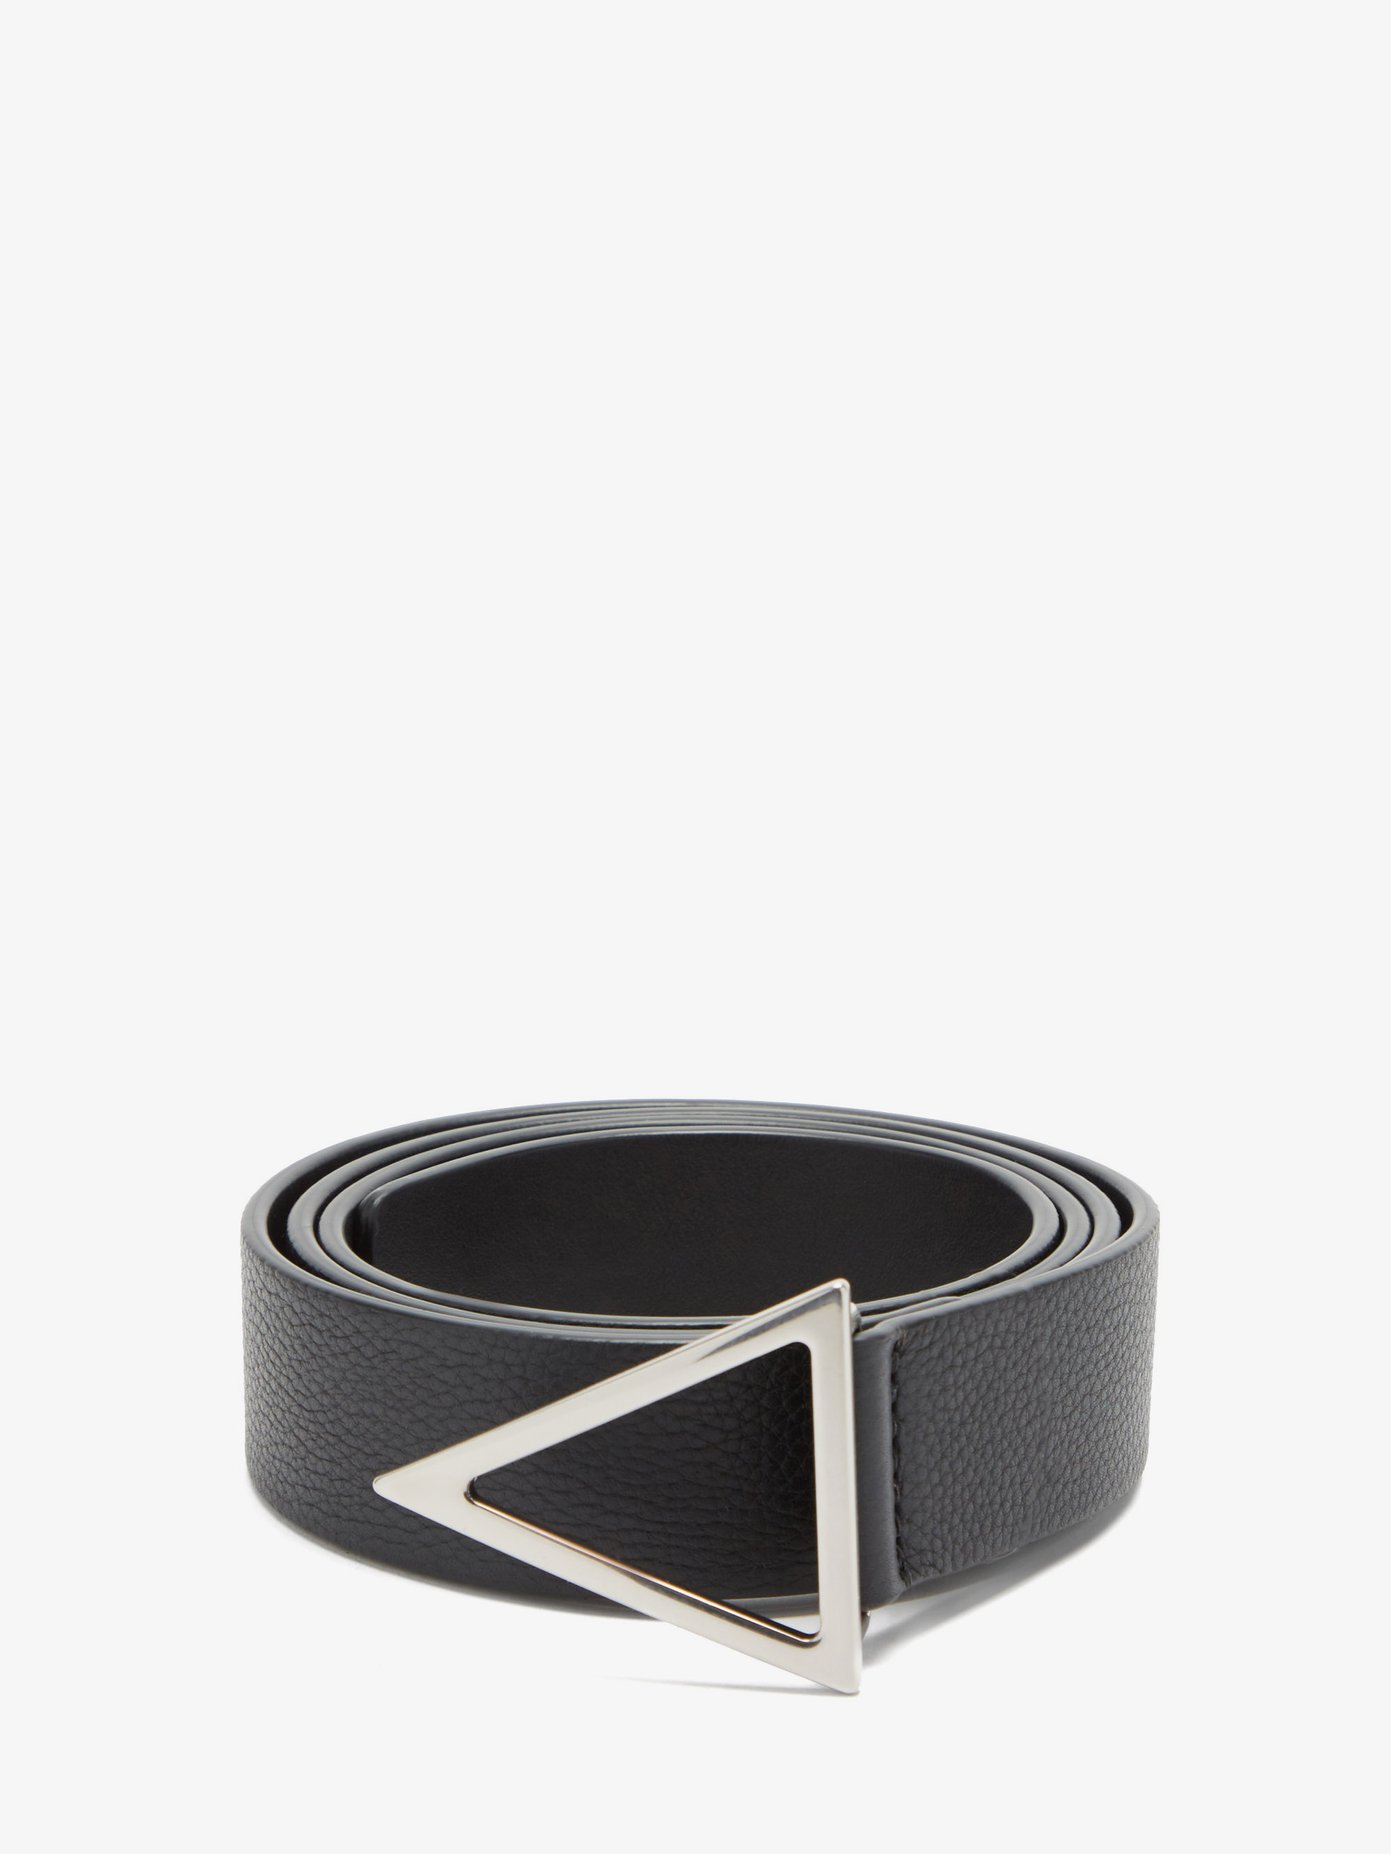 보테가 베네타 트라이앵글 버클 벨트 Bottega Veneta Black Triangle-buckle grained-leather belt